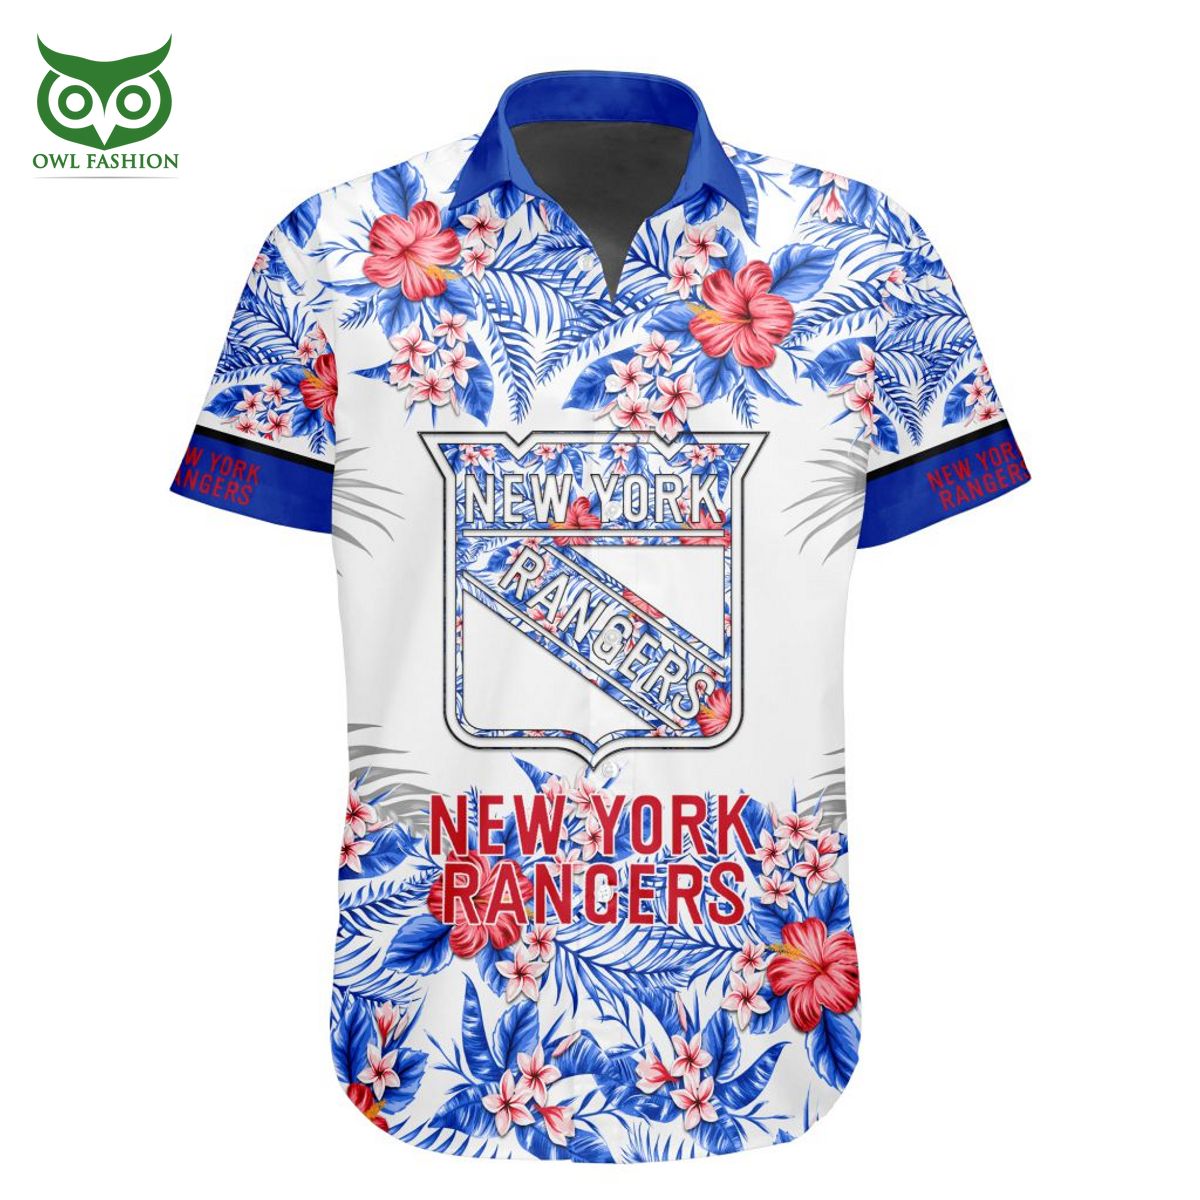 New York Rangers Playoffs Apparel, Rangers Gear, New York Rangers Shop